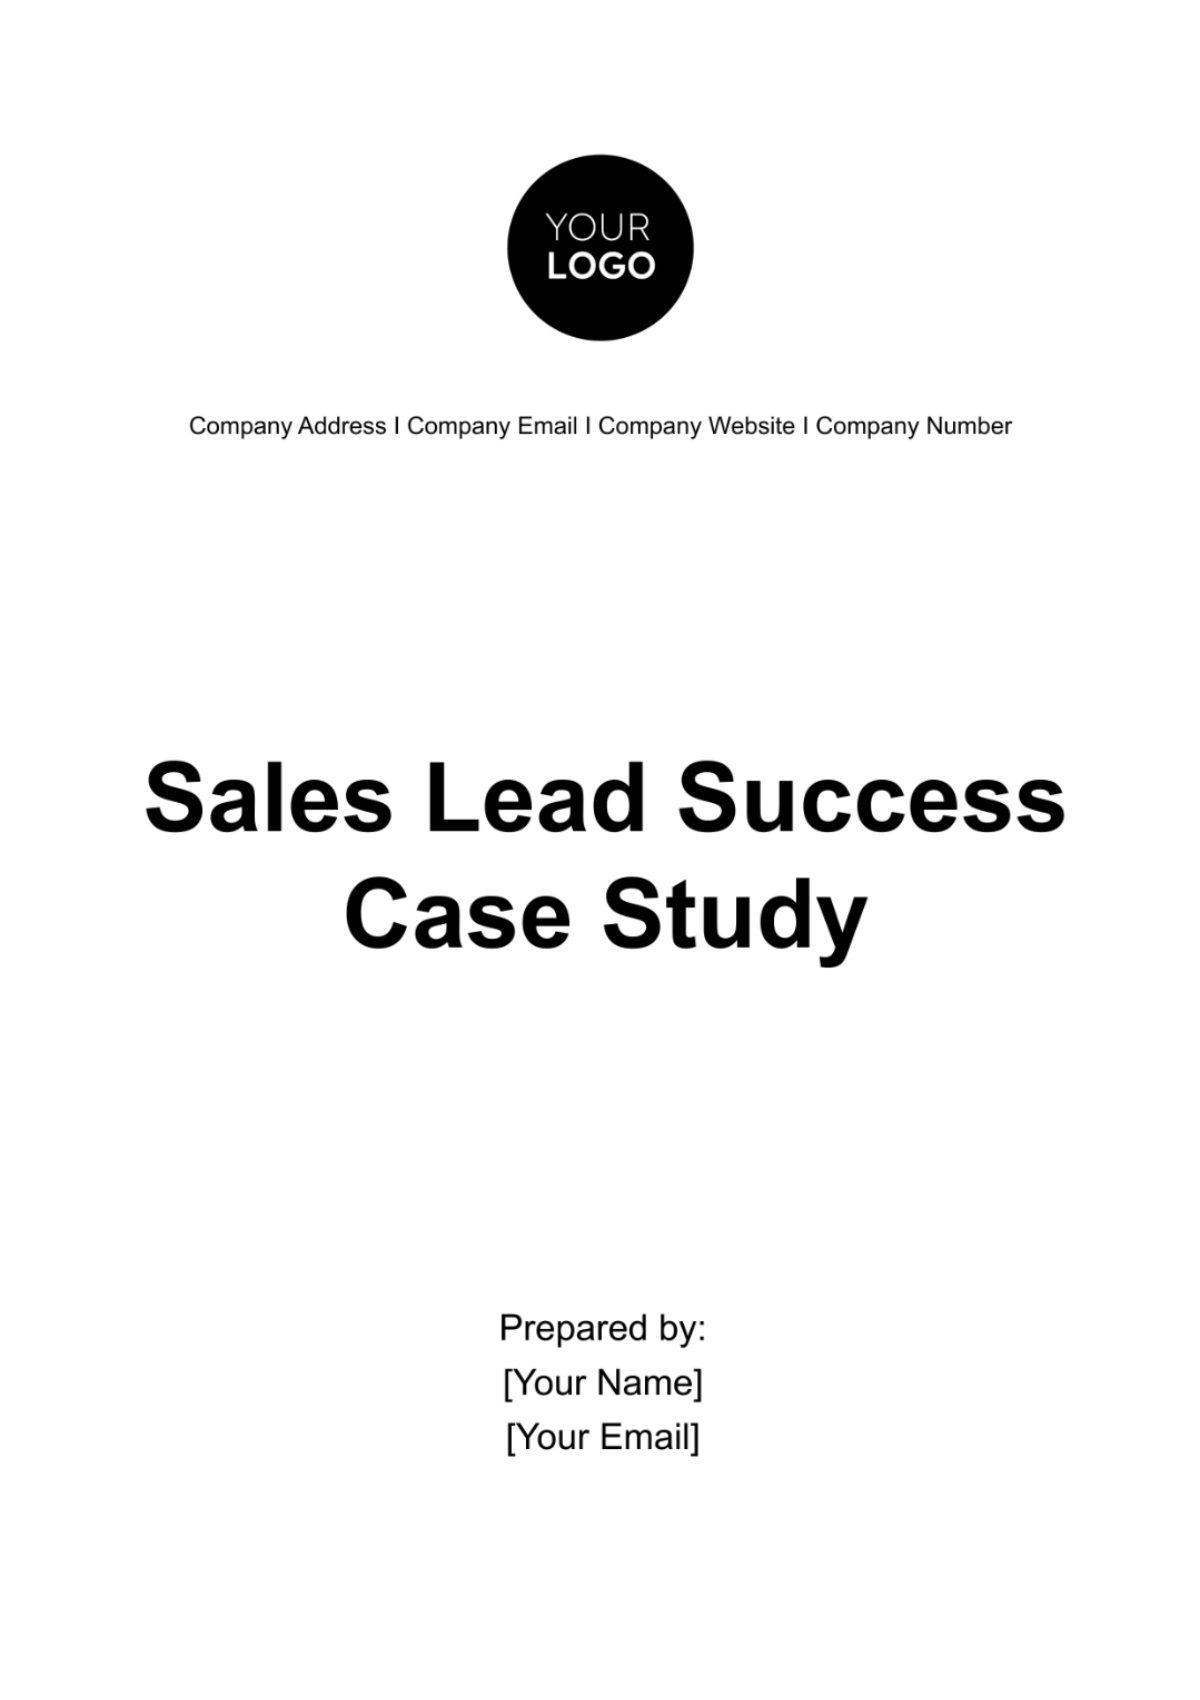 Sales Lead Success Case Study Template